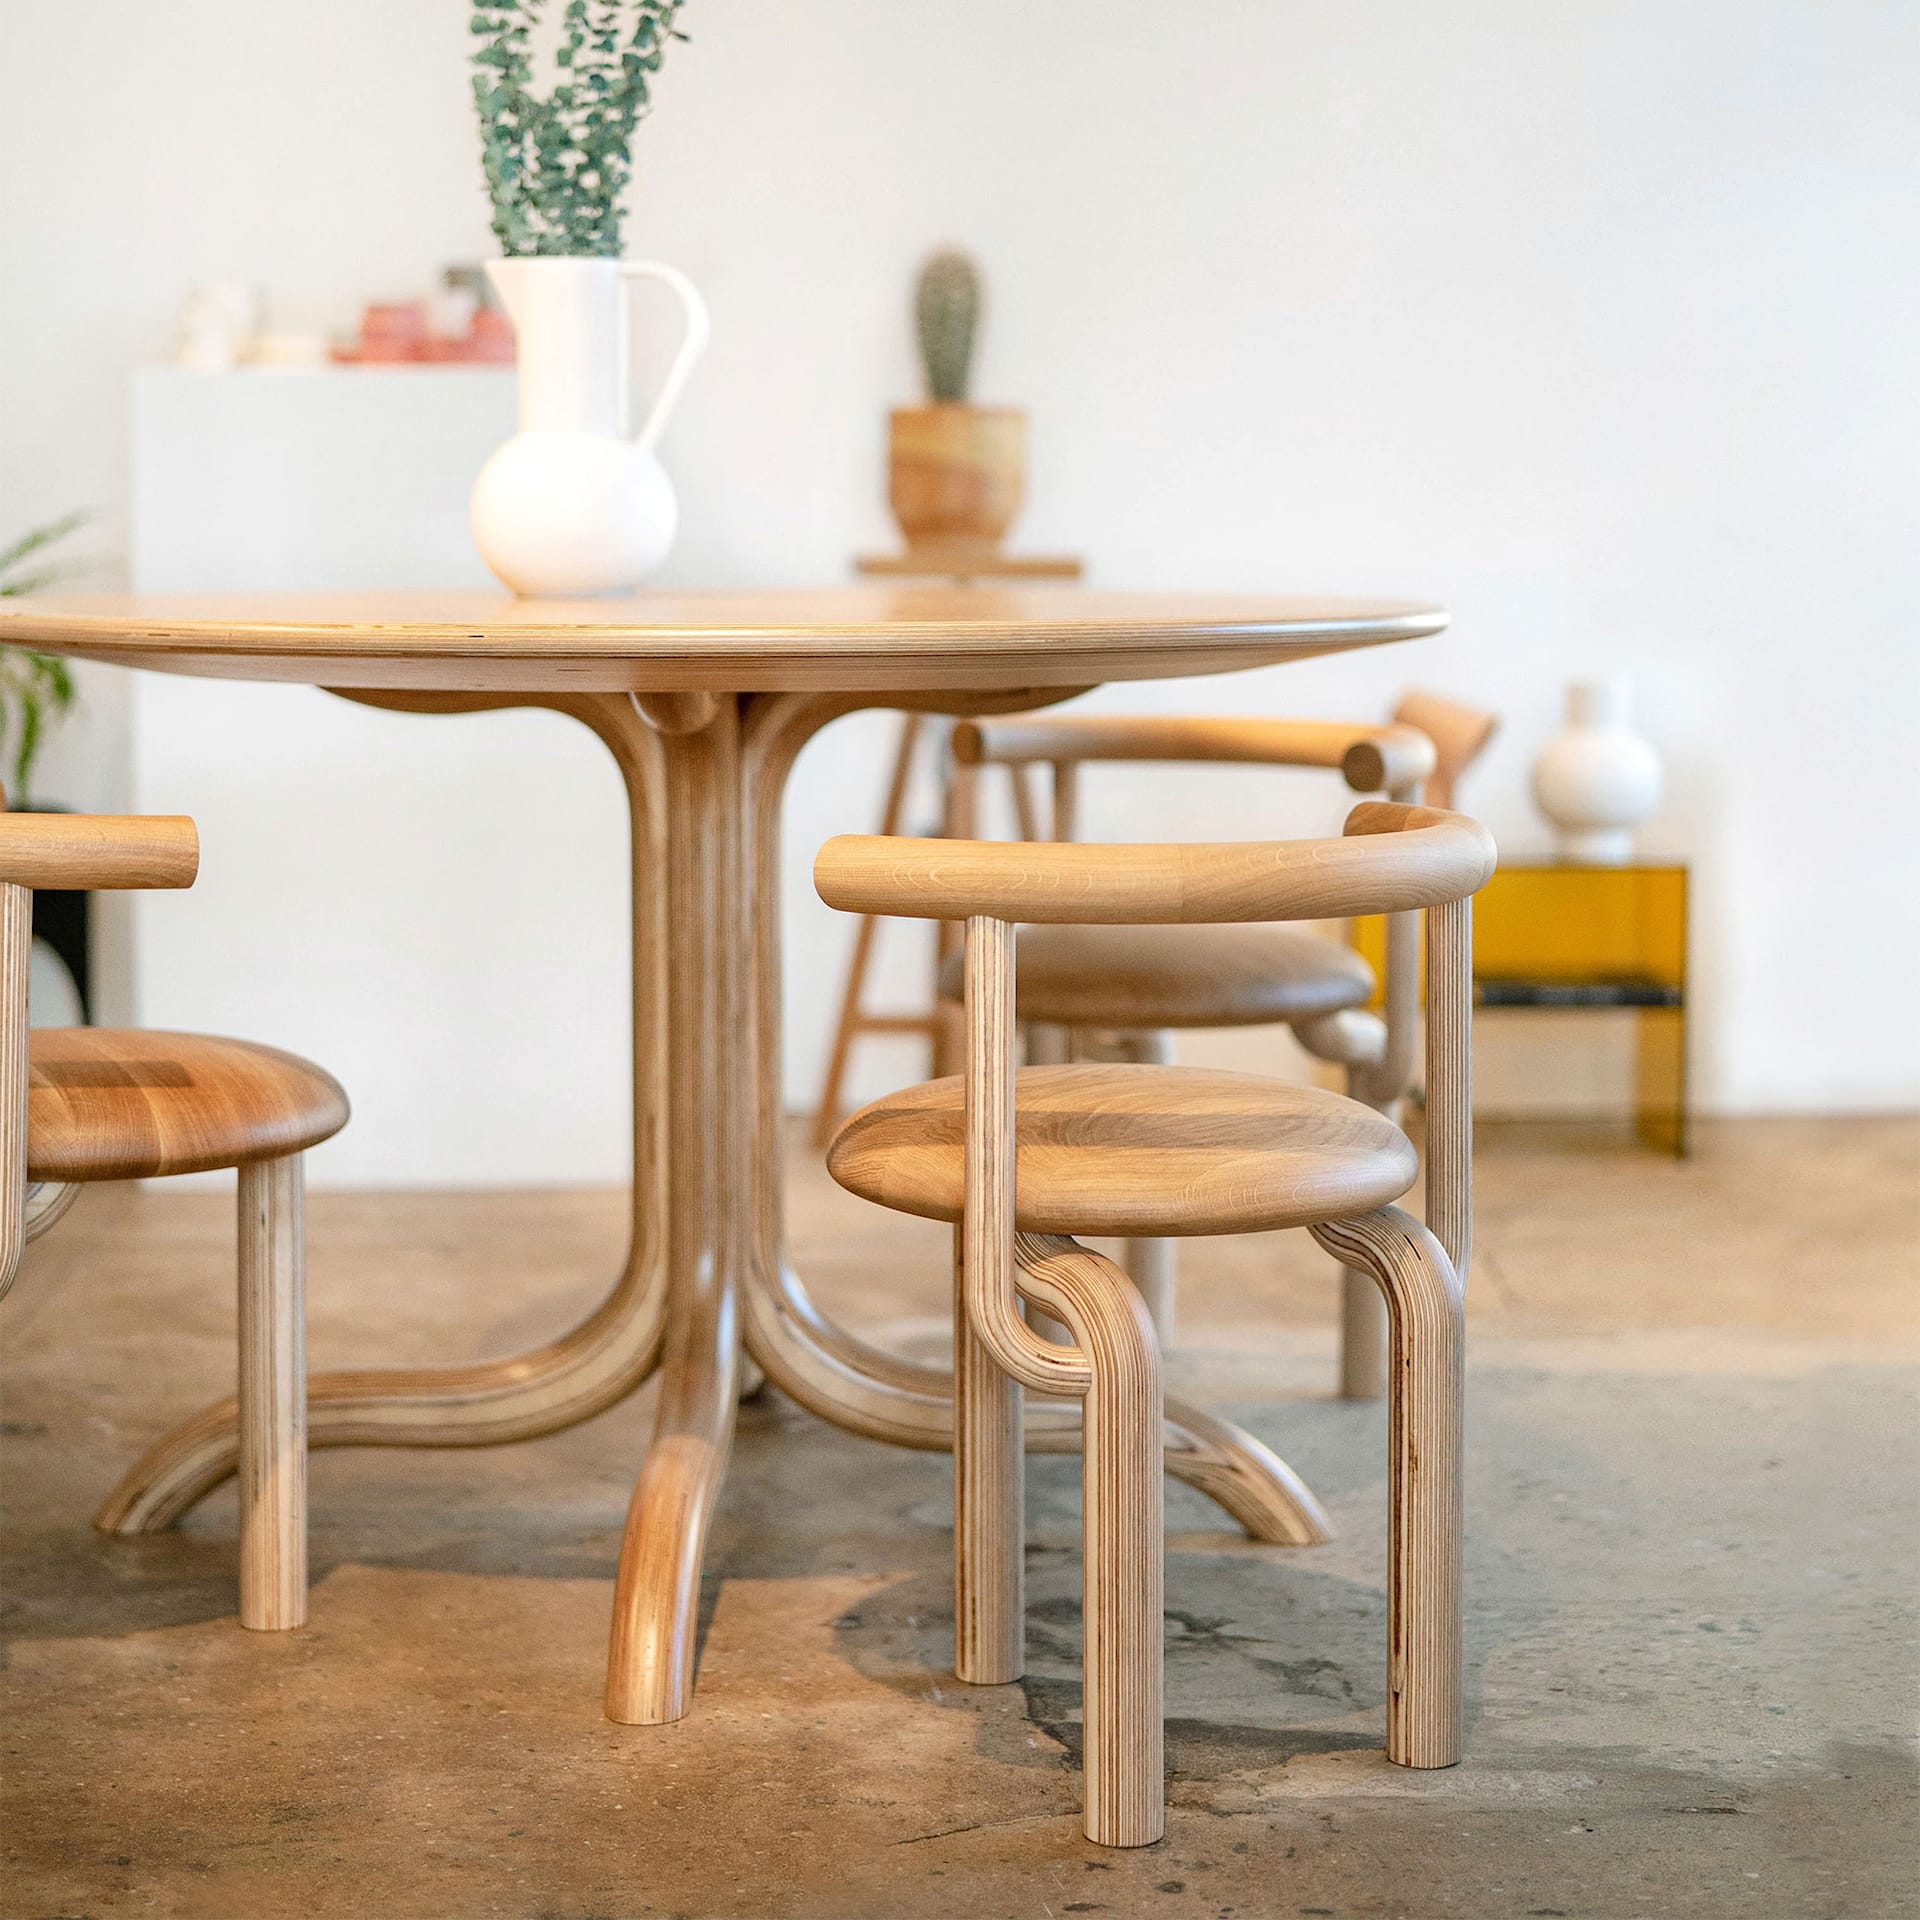 Sieni Chair - Made by Choice - NO GA